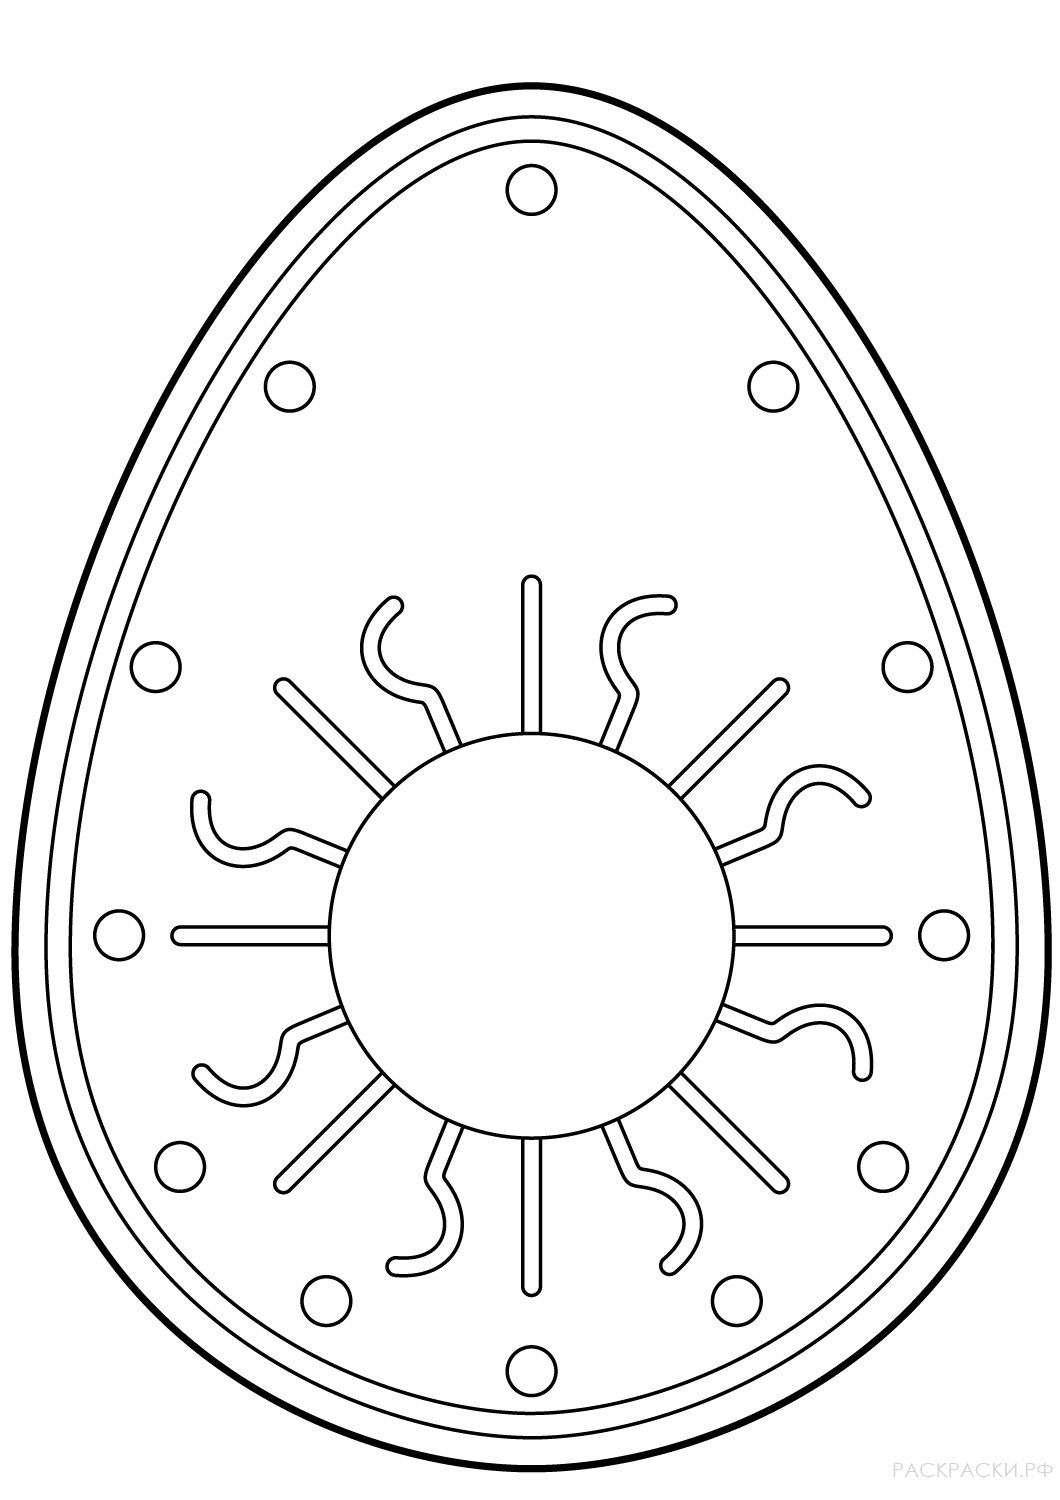 Раскраска Пасхальное яйцо с символом солнца